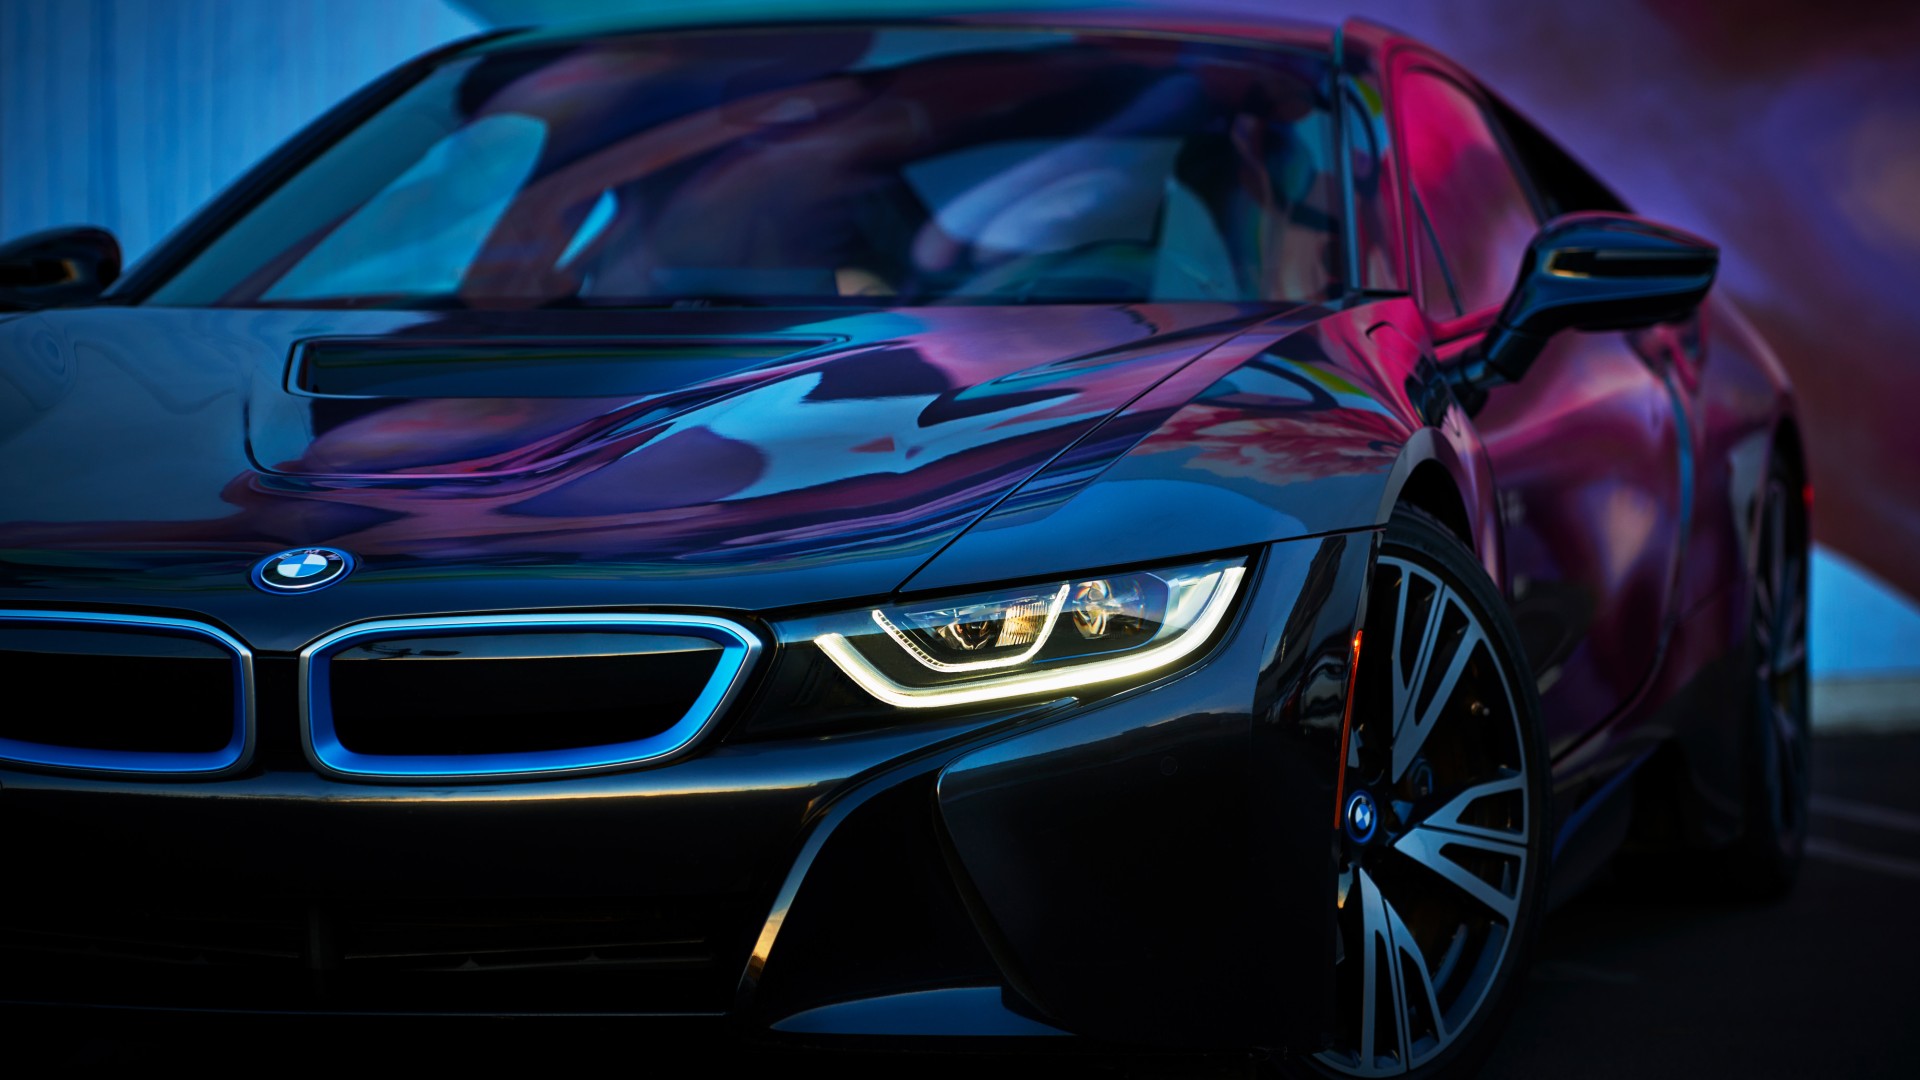 2018 BMW i8 4K Wallpaper | HD Car Wallpapers | ID #9693